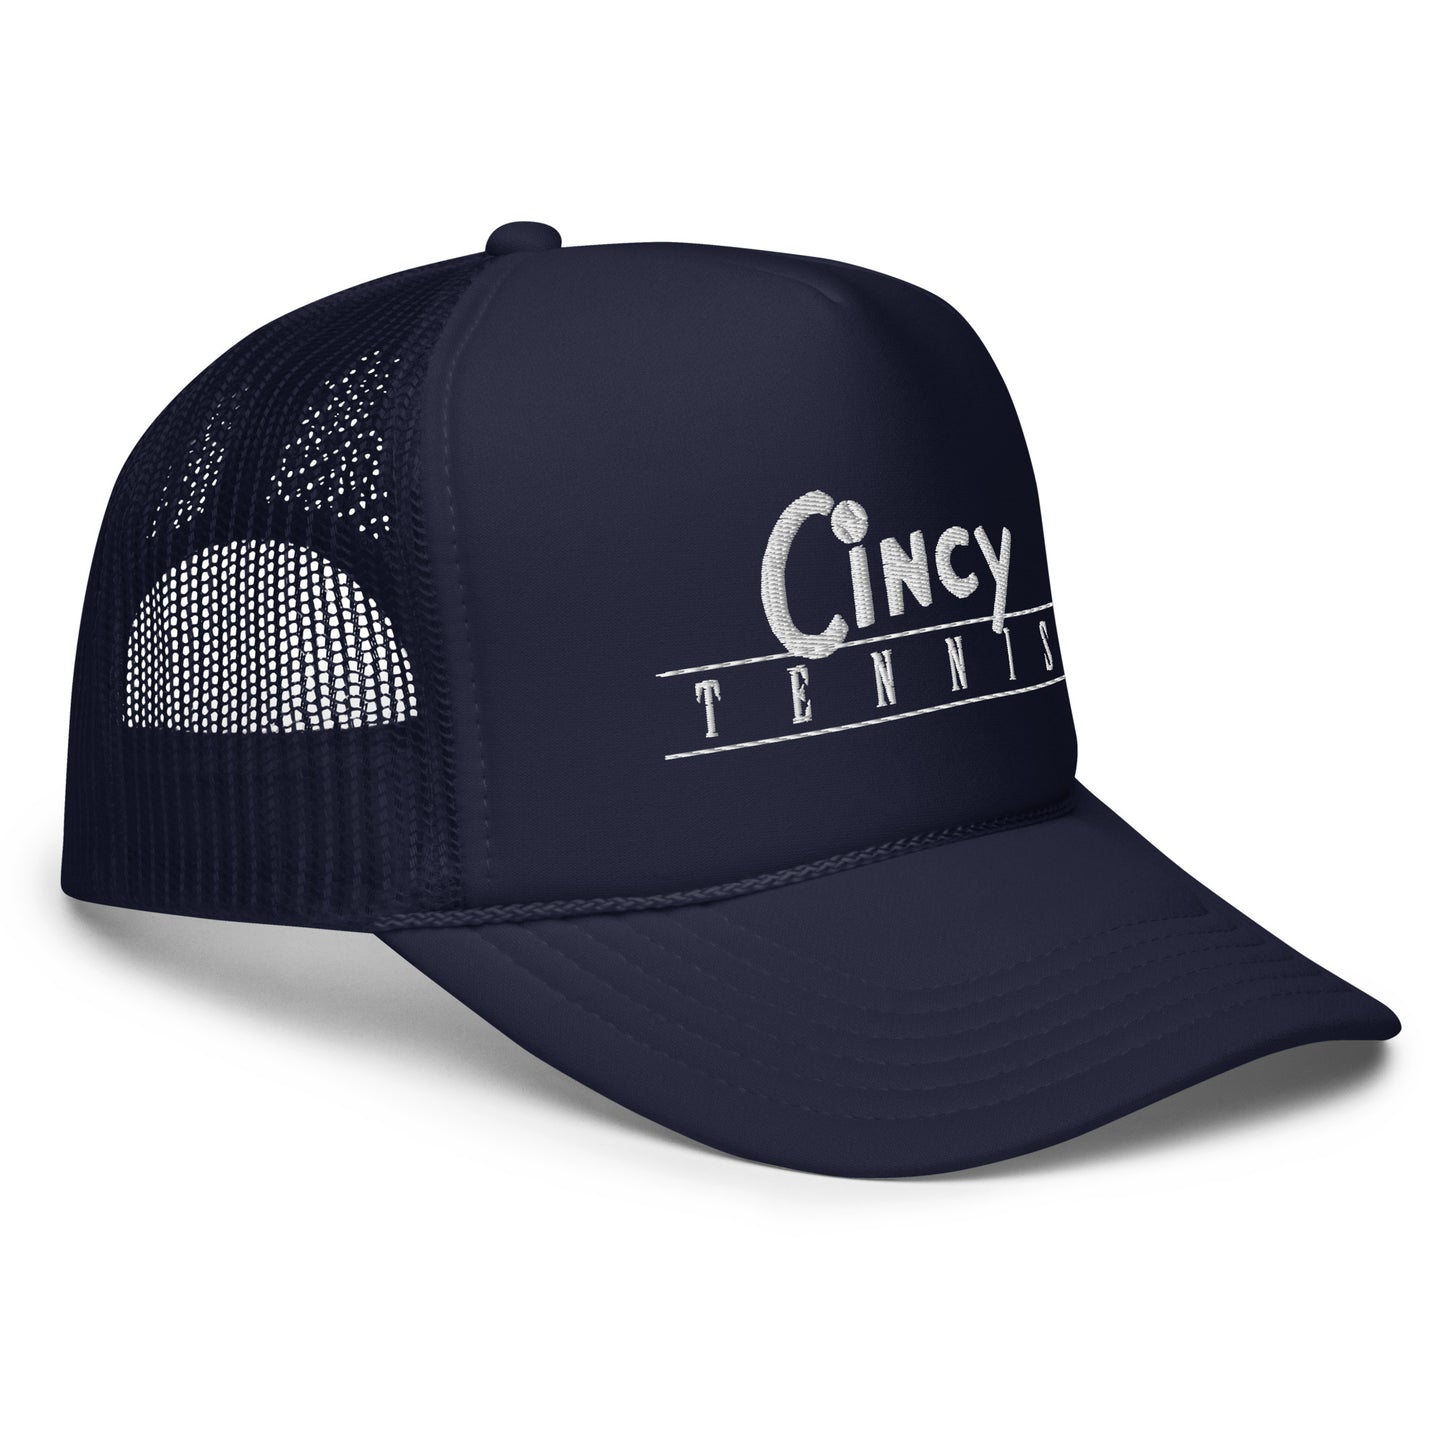 Cincy Tennis foam trucker hat